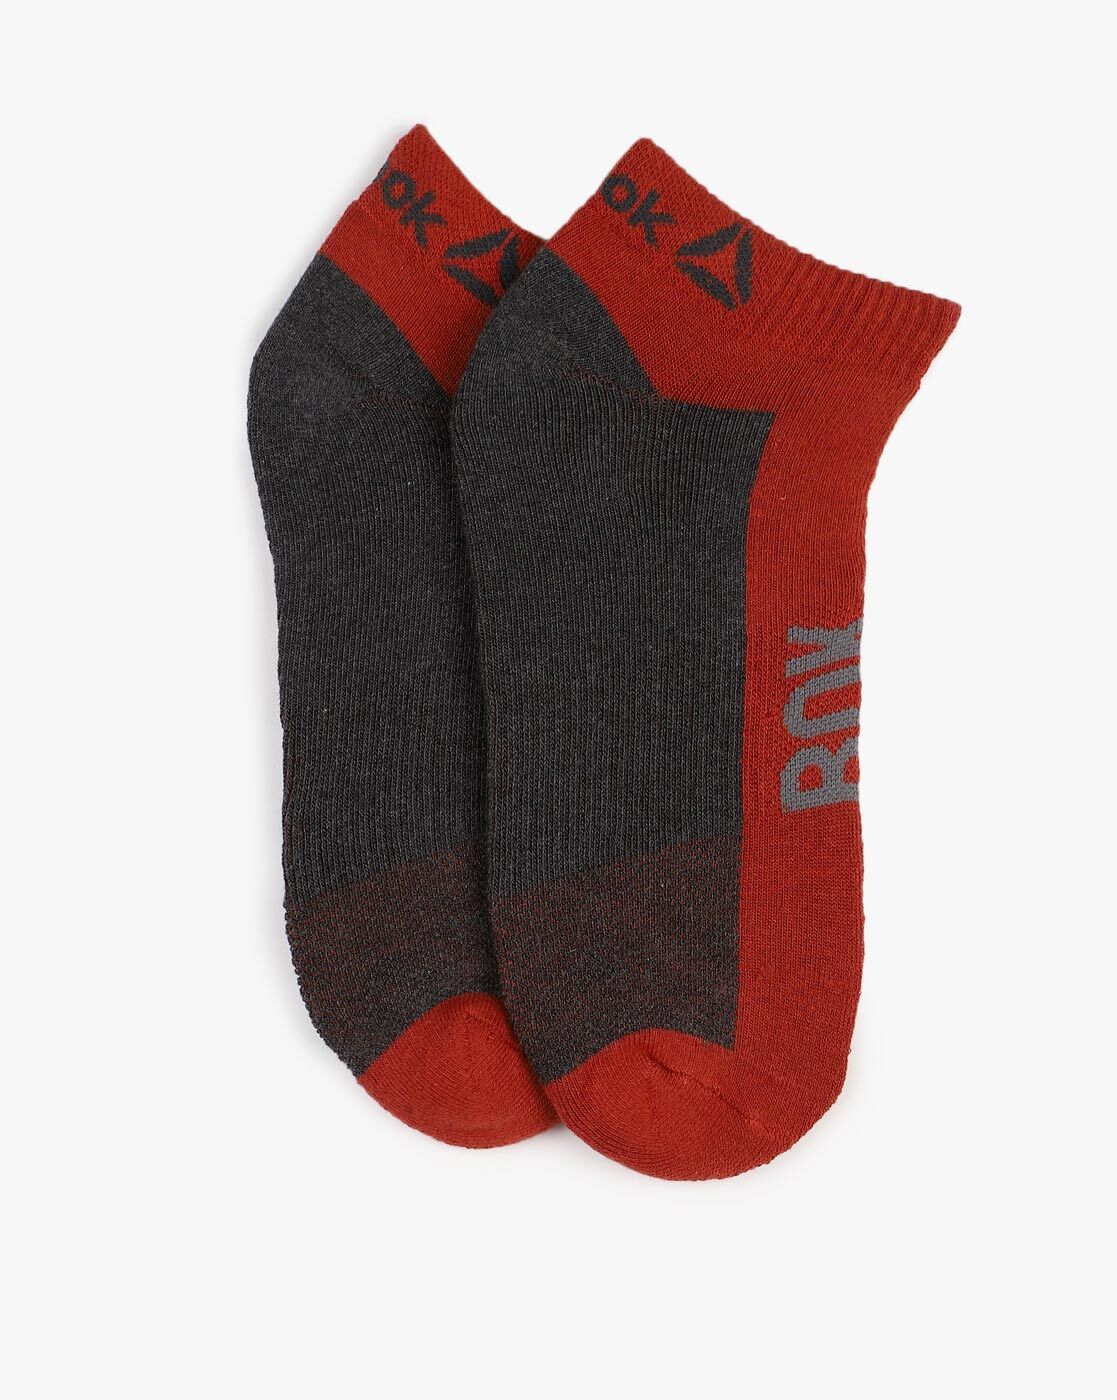 Maroon Socks for Men by Reebok Classic 